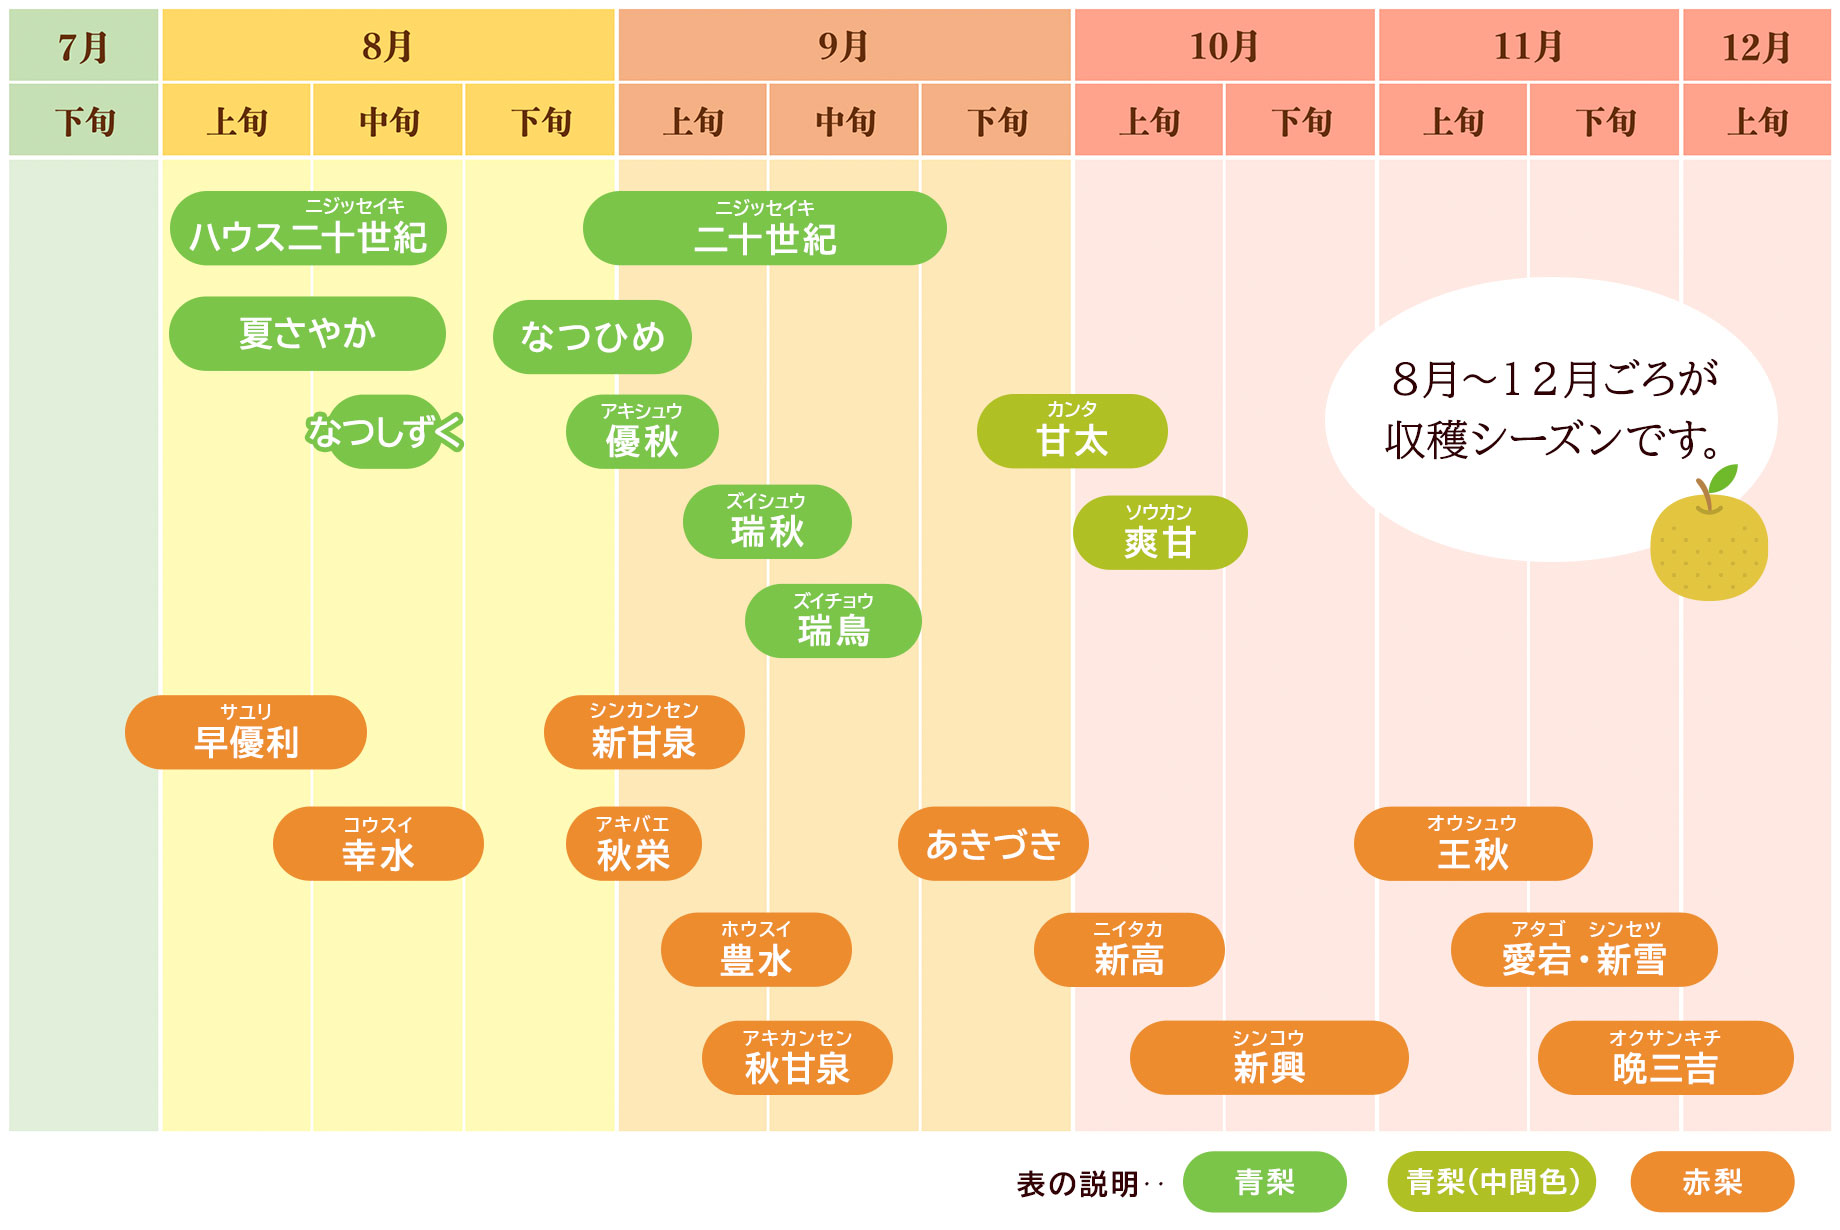 鳥取県梨の収穫カレンダー青梨赤梨の違い